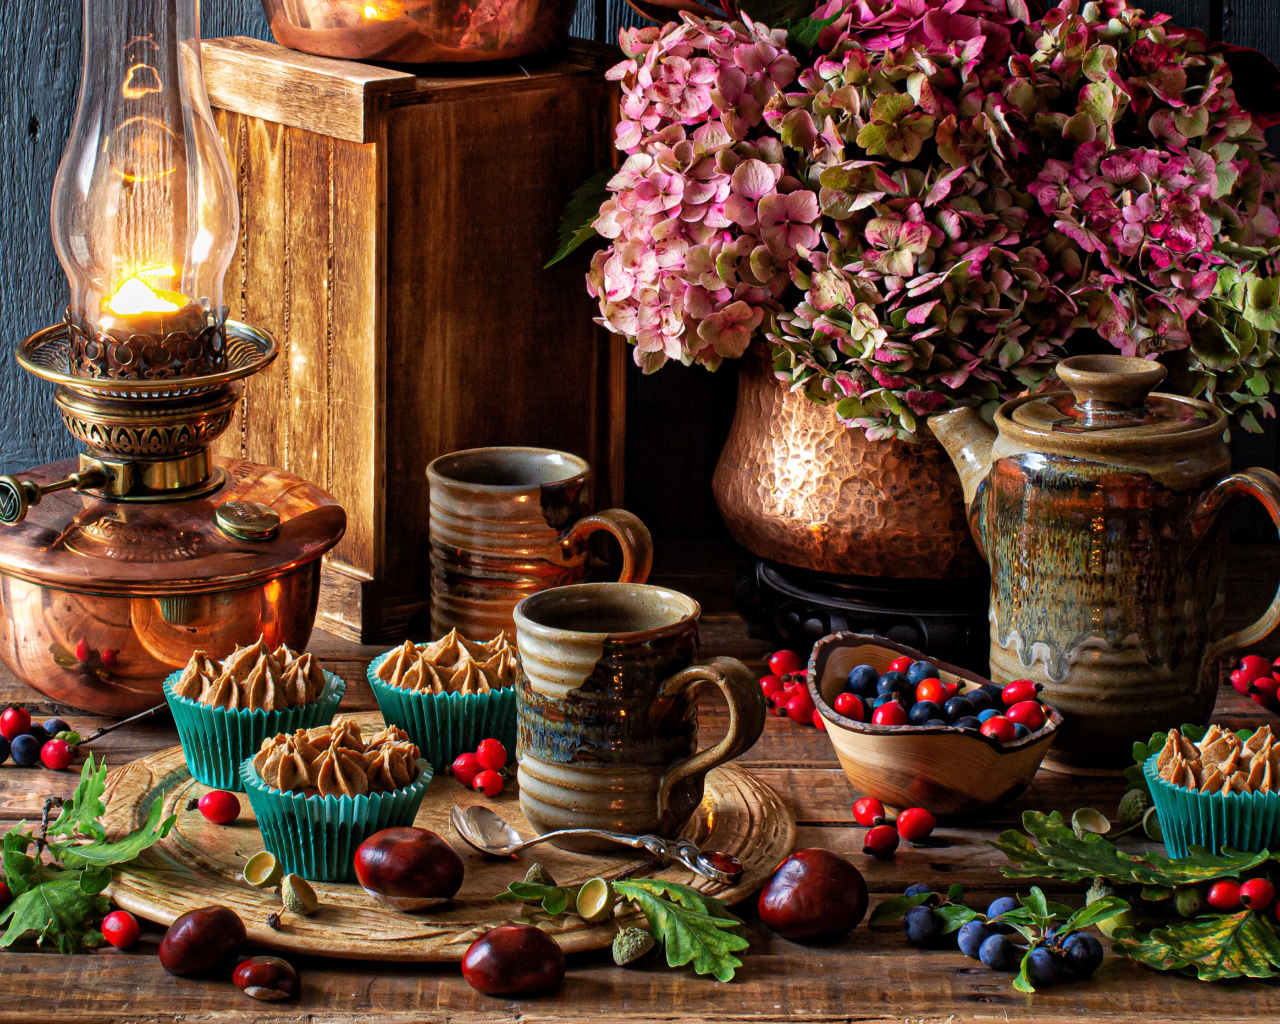 Кексы с кремом на столе с ягодами, цветами и лампой 